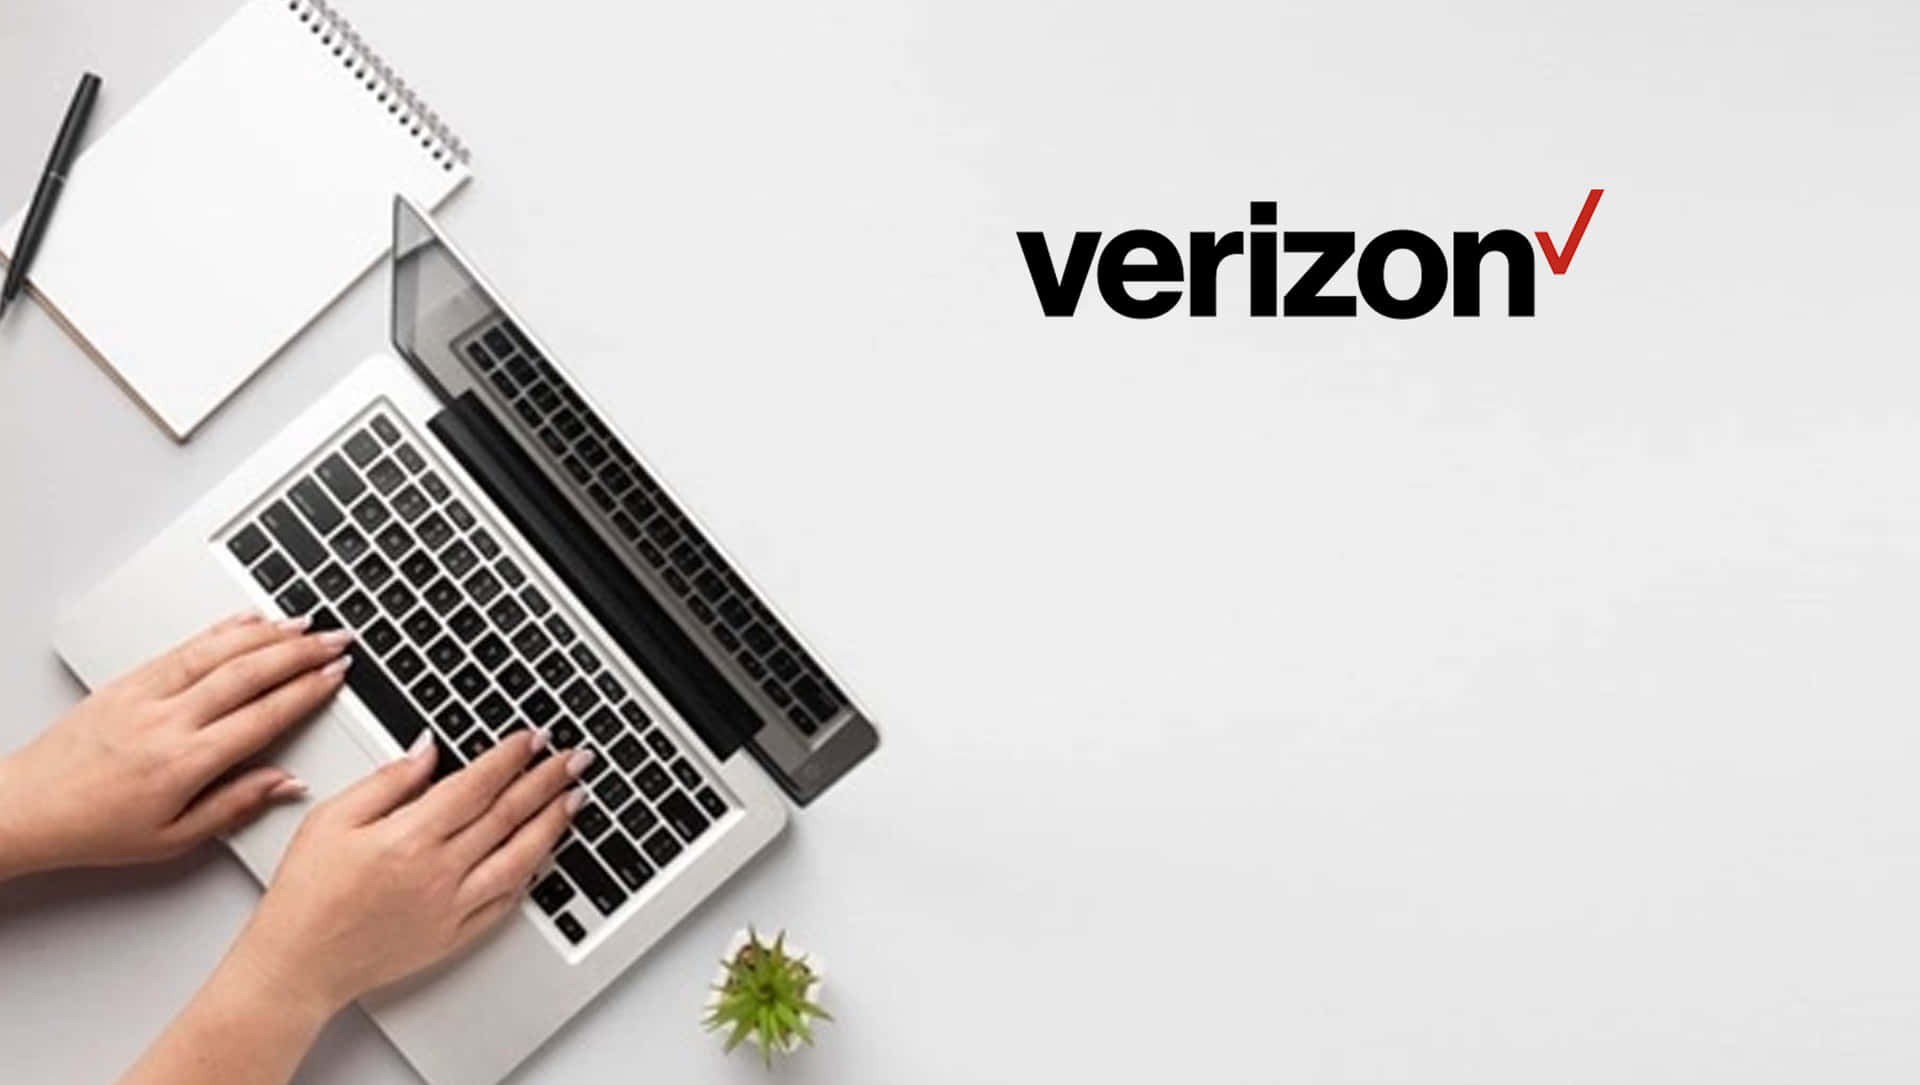 Verizon Vs T-mobile - A Comparison